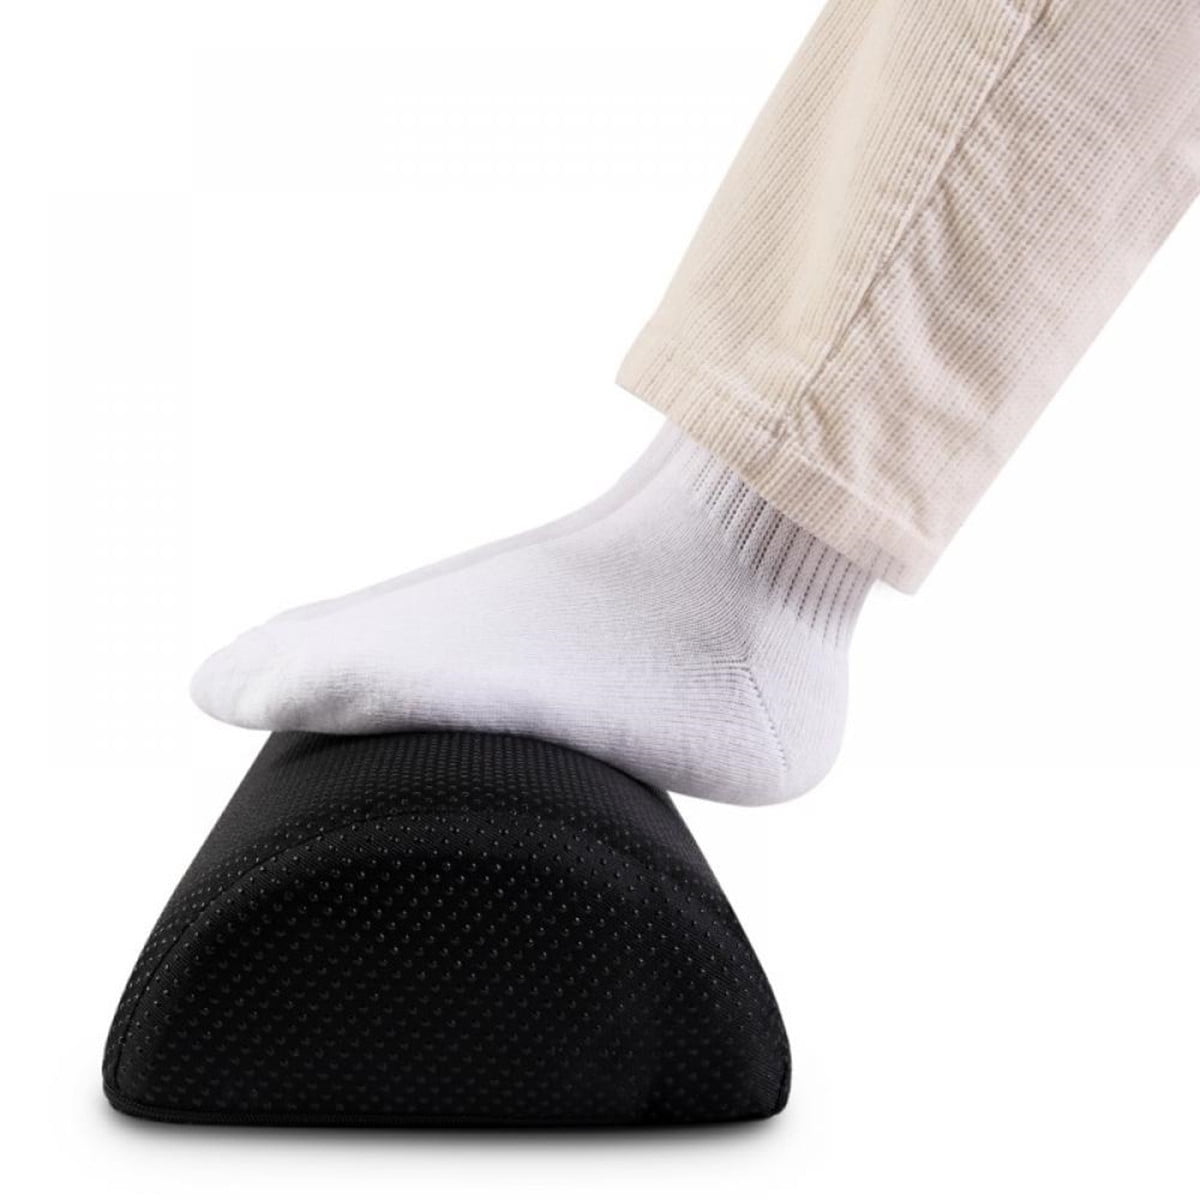 Ergonomic Foot Rest Cushion Under Desk with High Rebound Ergonomic Foam Non-Slip 